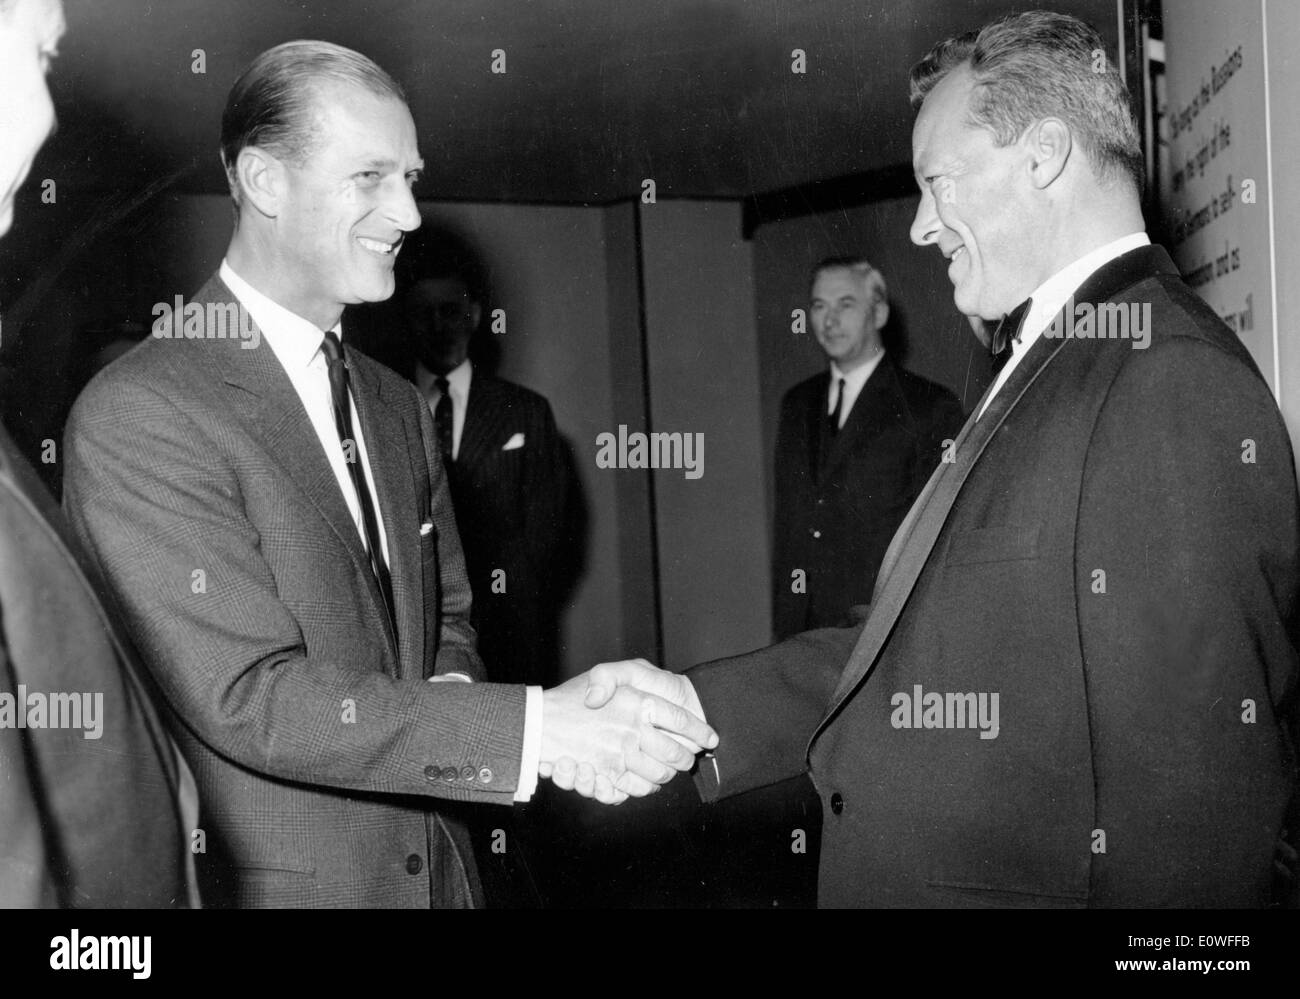 El príncipe Felipe saluda al alcalde Willy Brandt Foto de stock